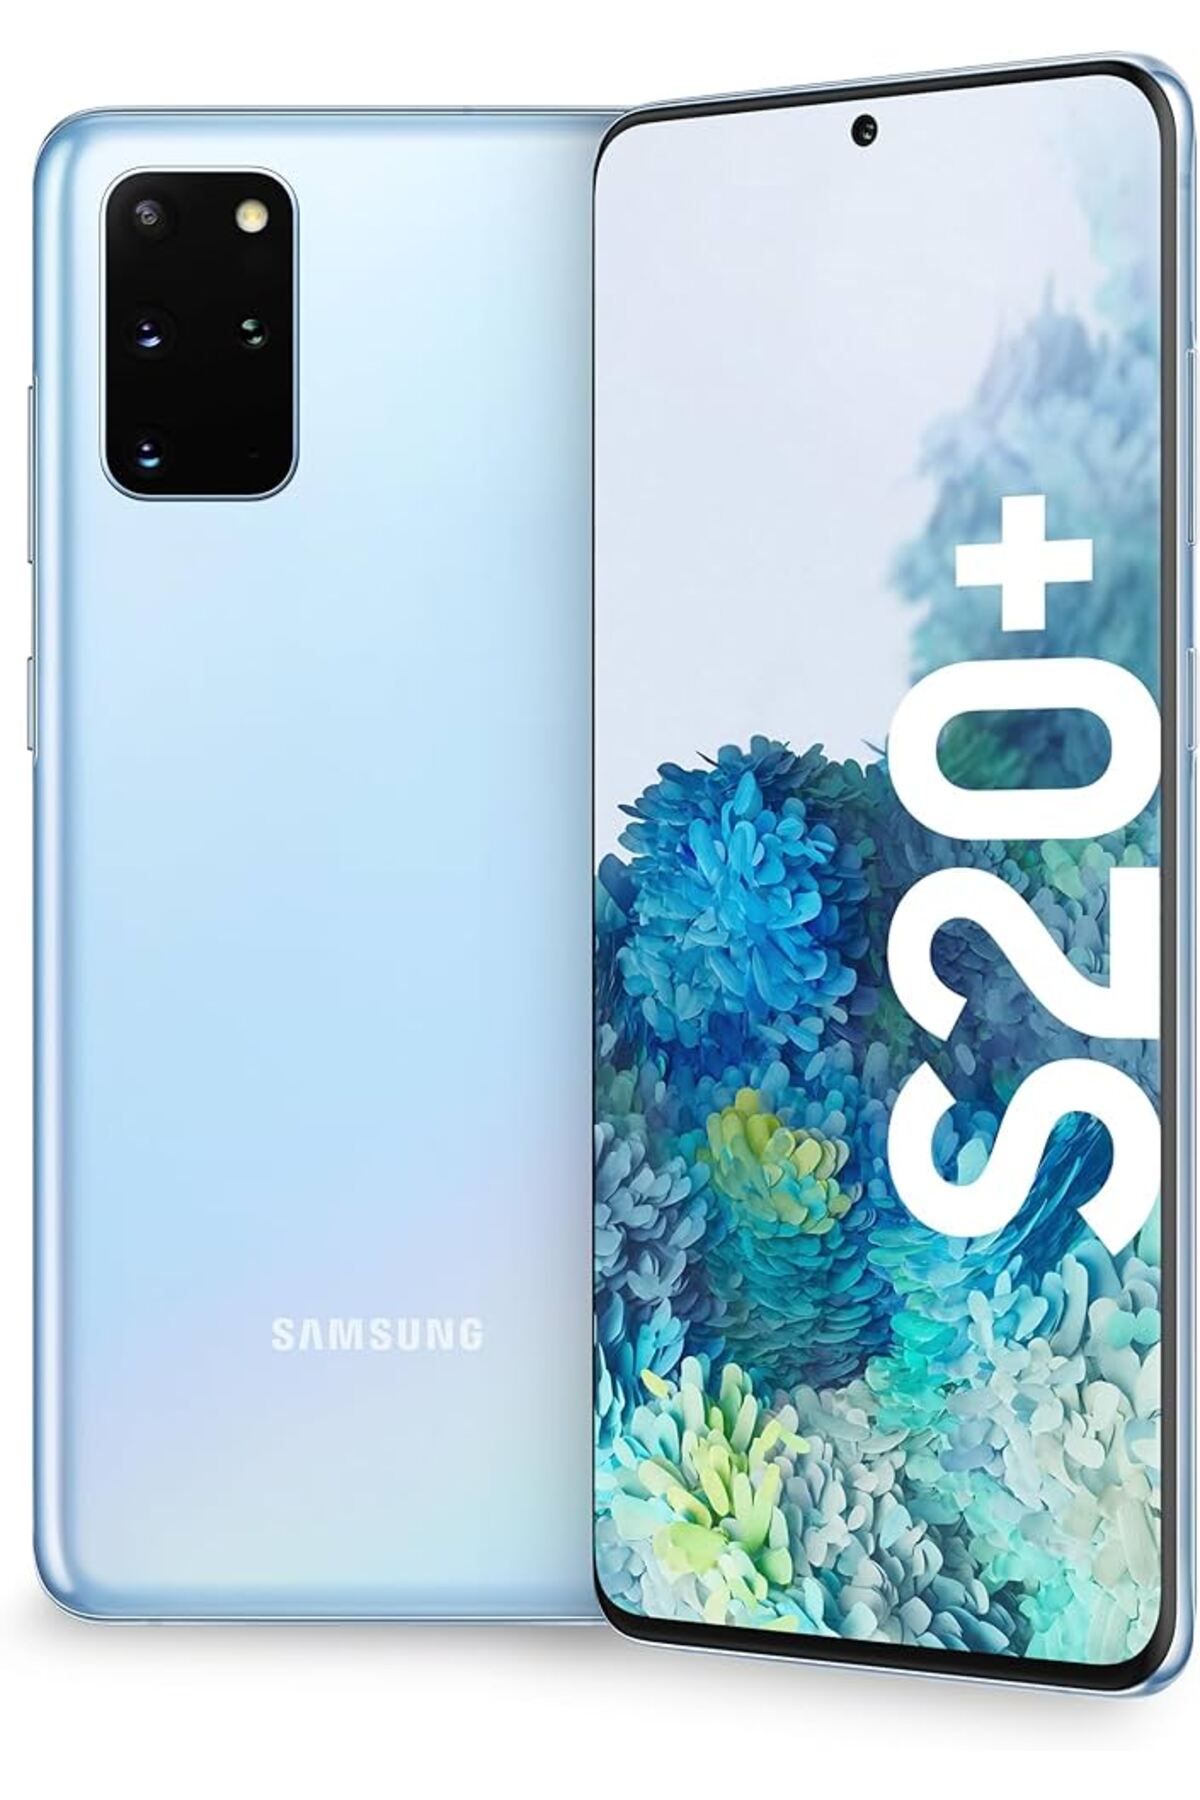 Samsung Yenilenmiş Samsung Galaxy S20 Plus 128GB Mavi A Kalite